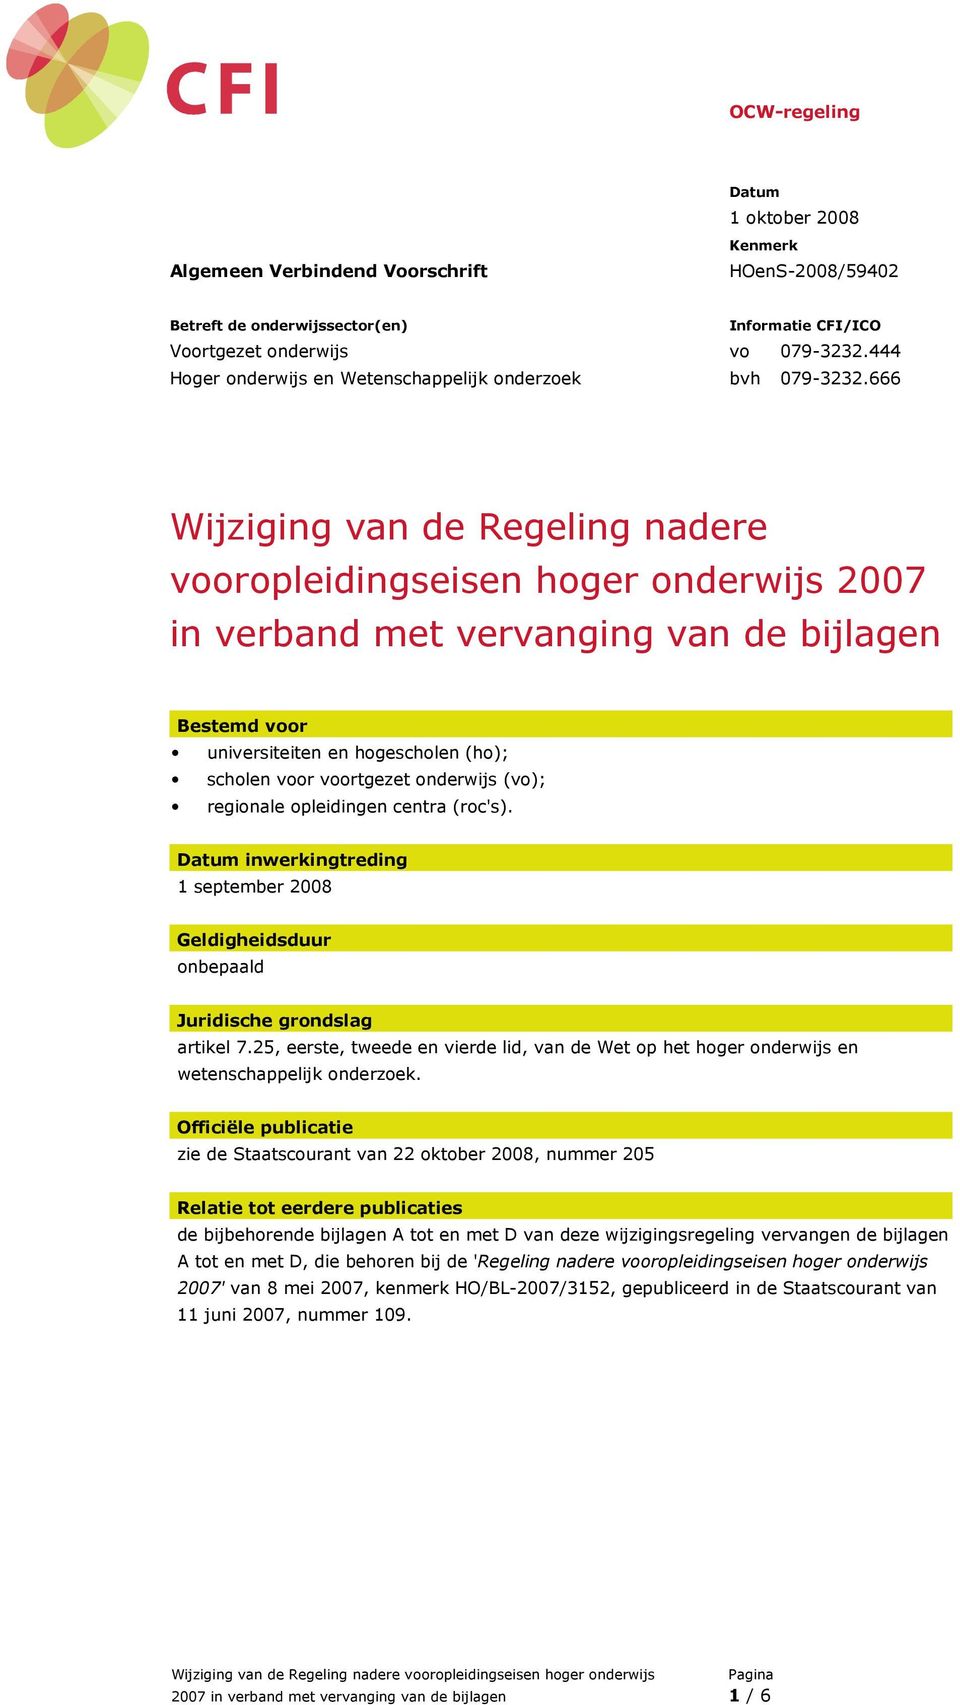 onderwijs (vo); regionale opleidingen centra (roc's). inwerkingtreding 1 september 2008 Geldigheidsduur onbepaald Juridische grondslag artikel 7.